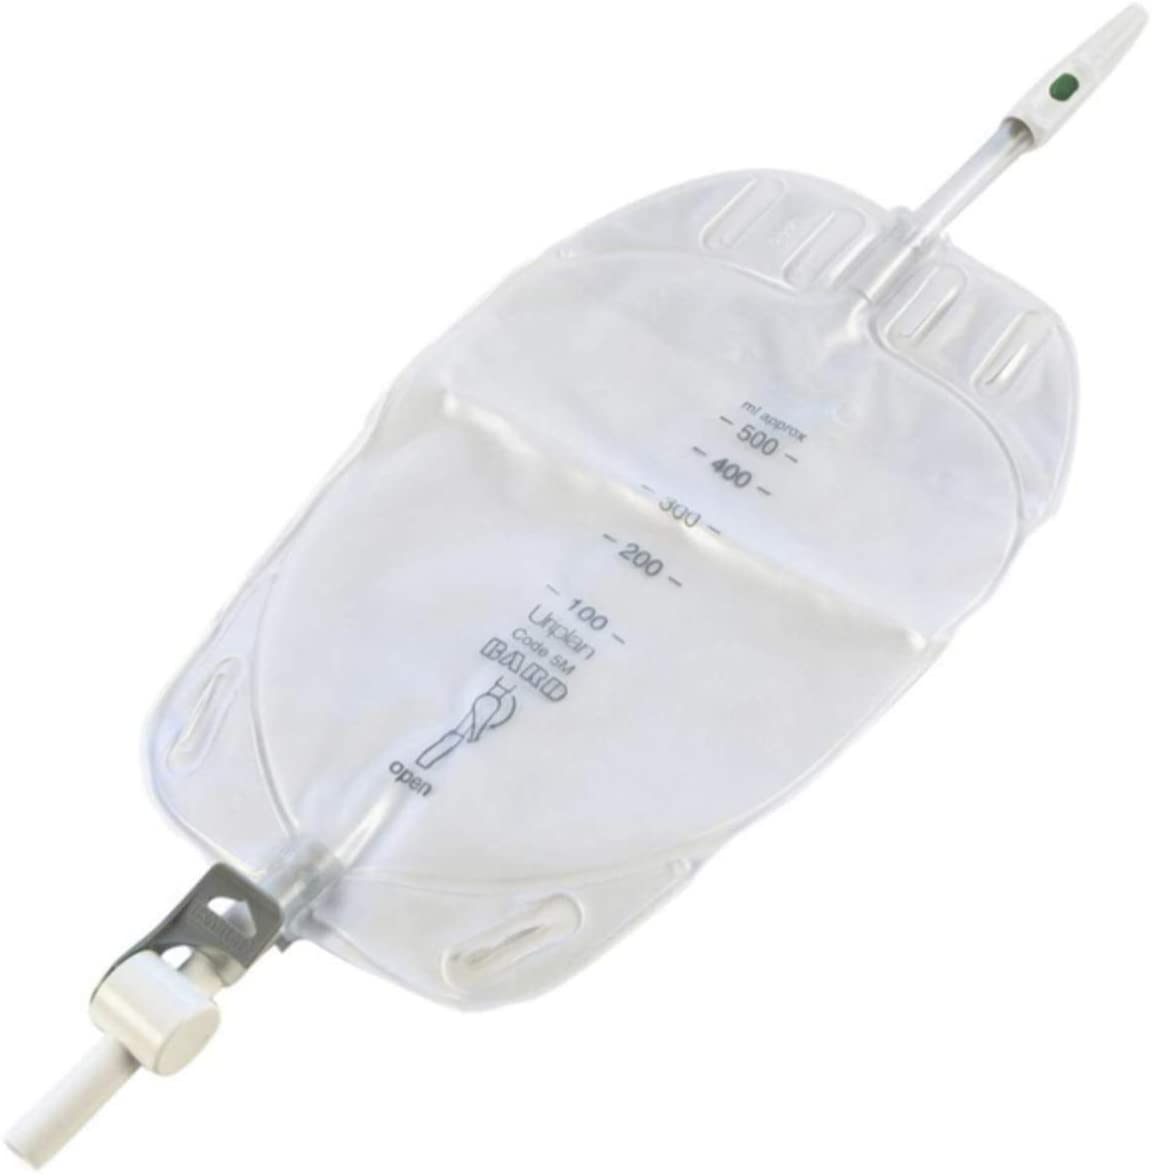 Bard Uriplan Leg Bags x 10, 500ml Capacity, 10cm Inlet, Ref: D5M with 180 deg Lever tap | EasyMeds Pharmacy